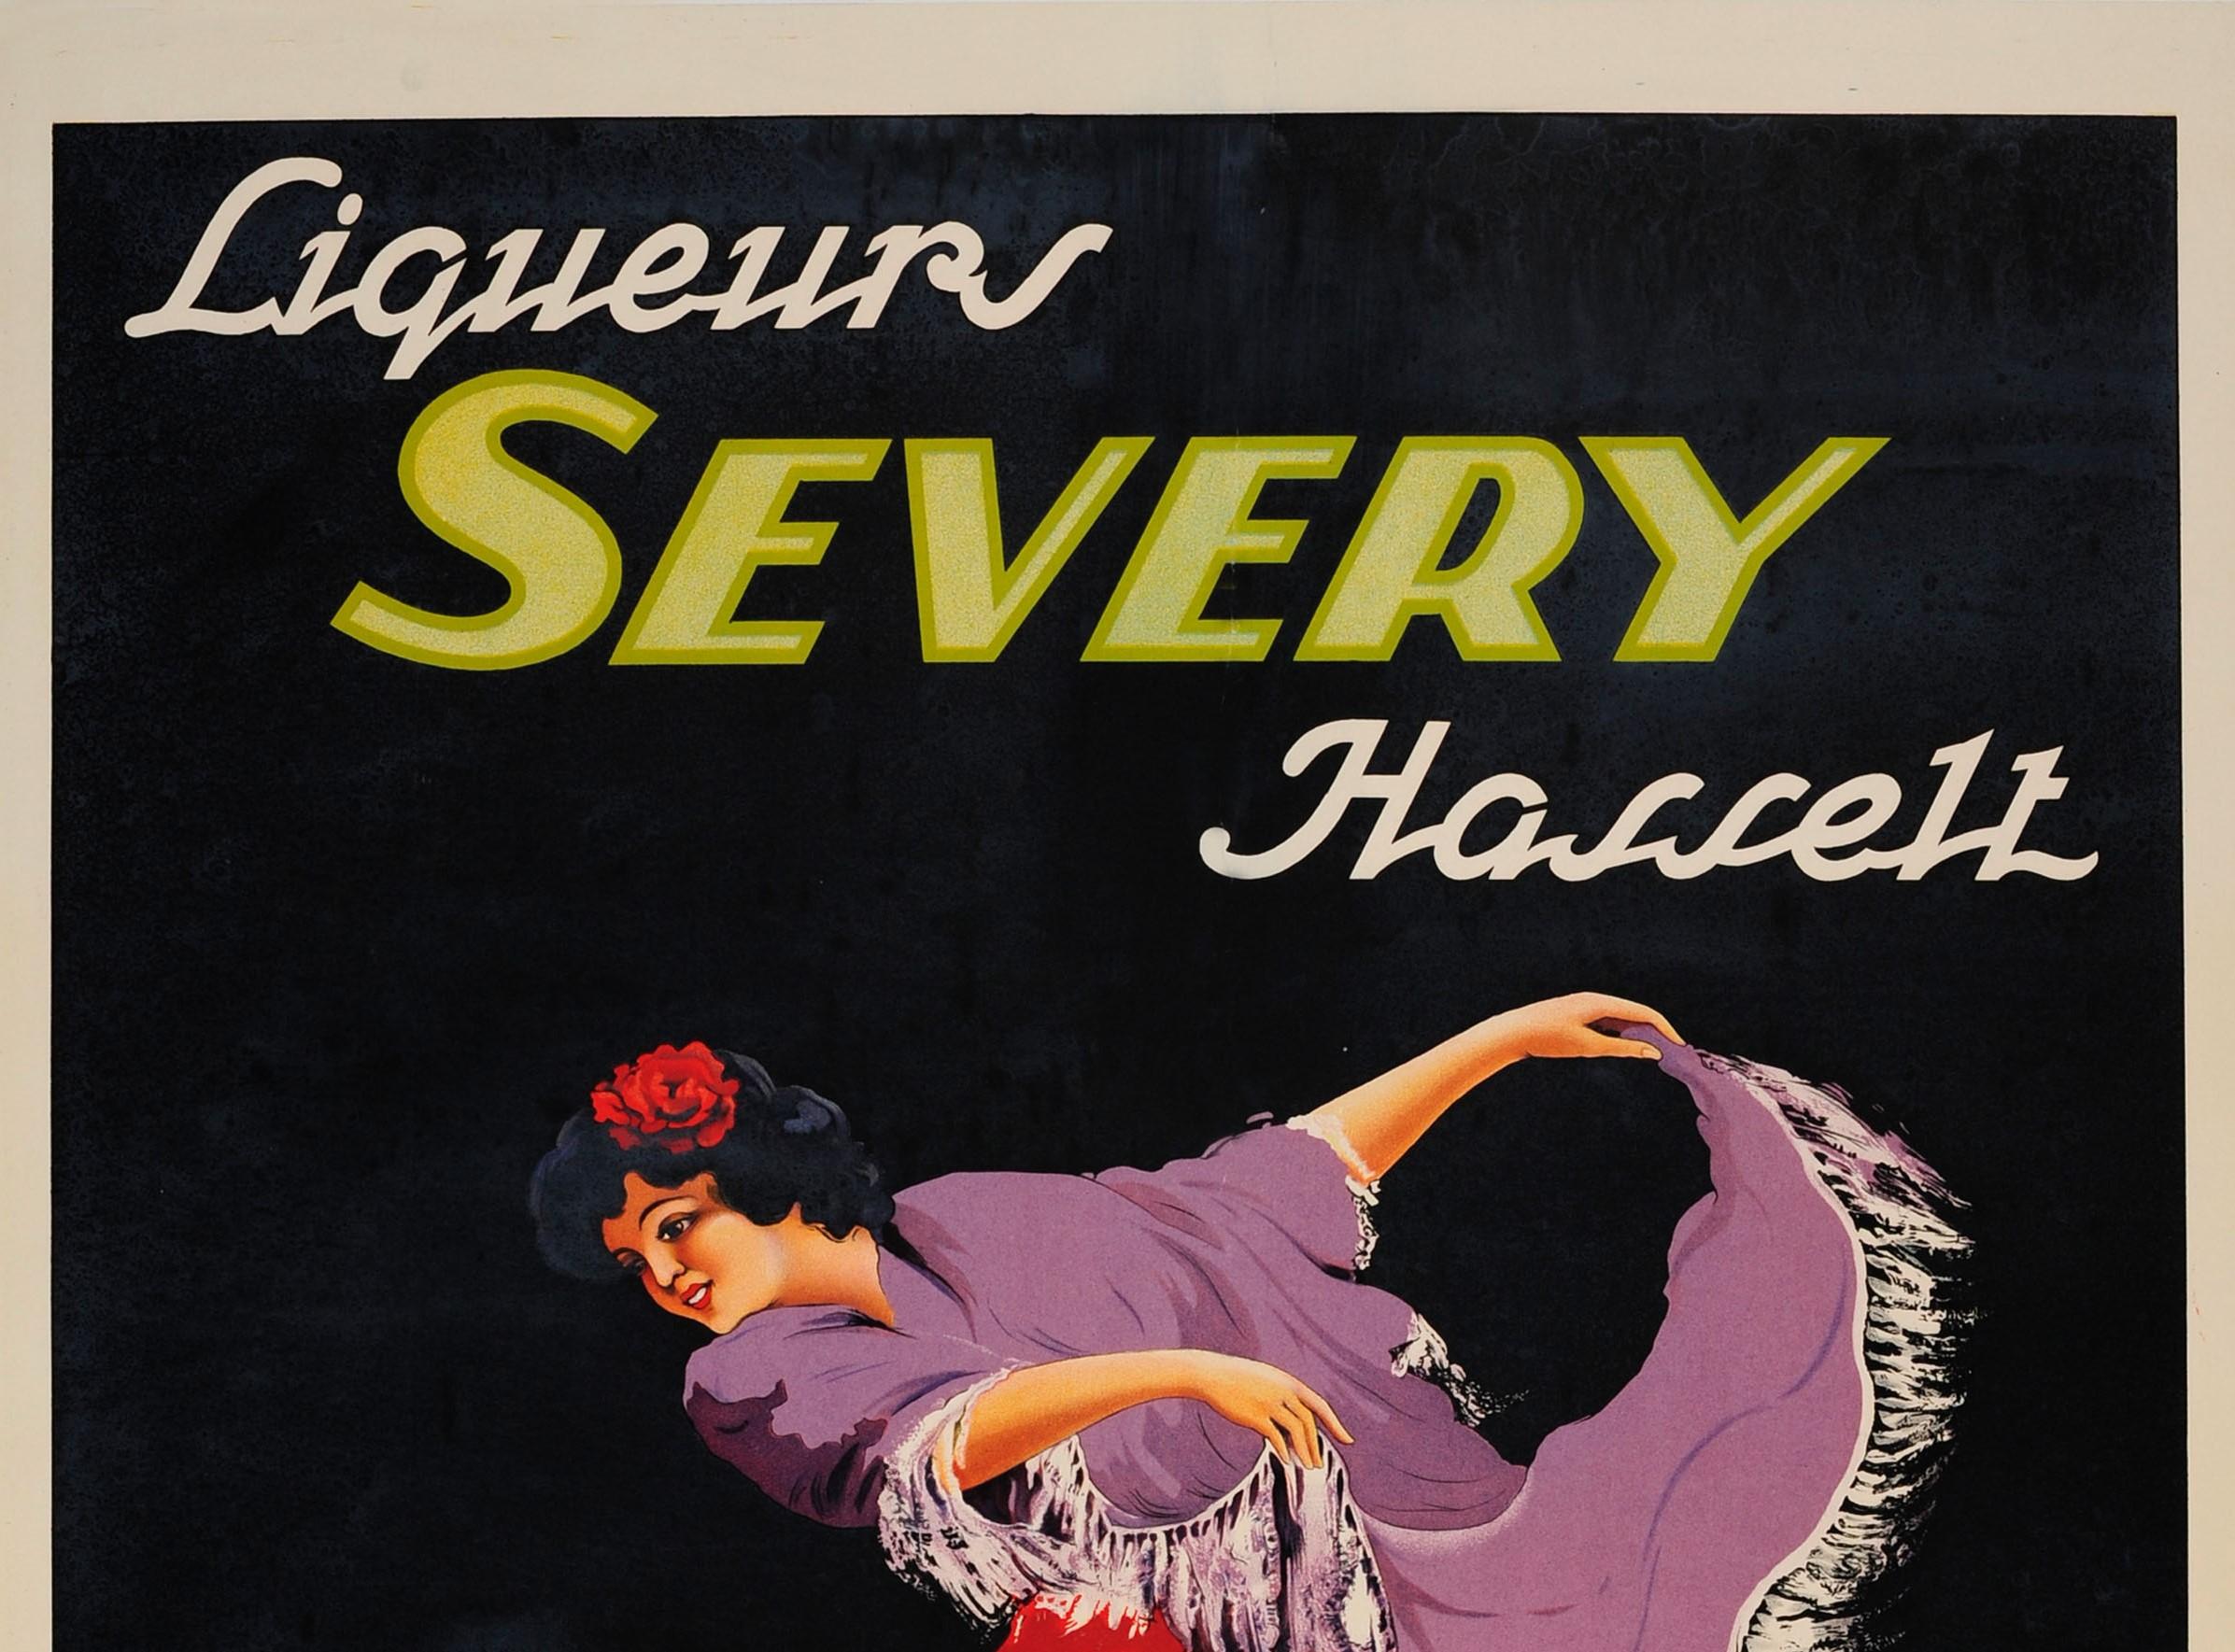 Affiche publicitaire originale pour les Liqueurs Severy Hasselt, réalisée par Roger Berckmans (né en 1900), représentant une femme dansant, vêtue d'un châle violet à franges et d'une robe fluide colorée, avec une fleur de rose rouge dans les